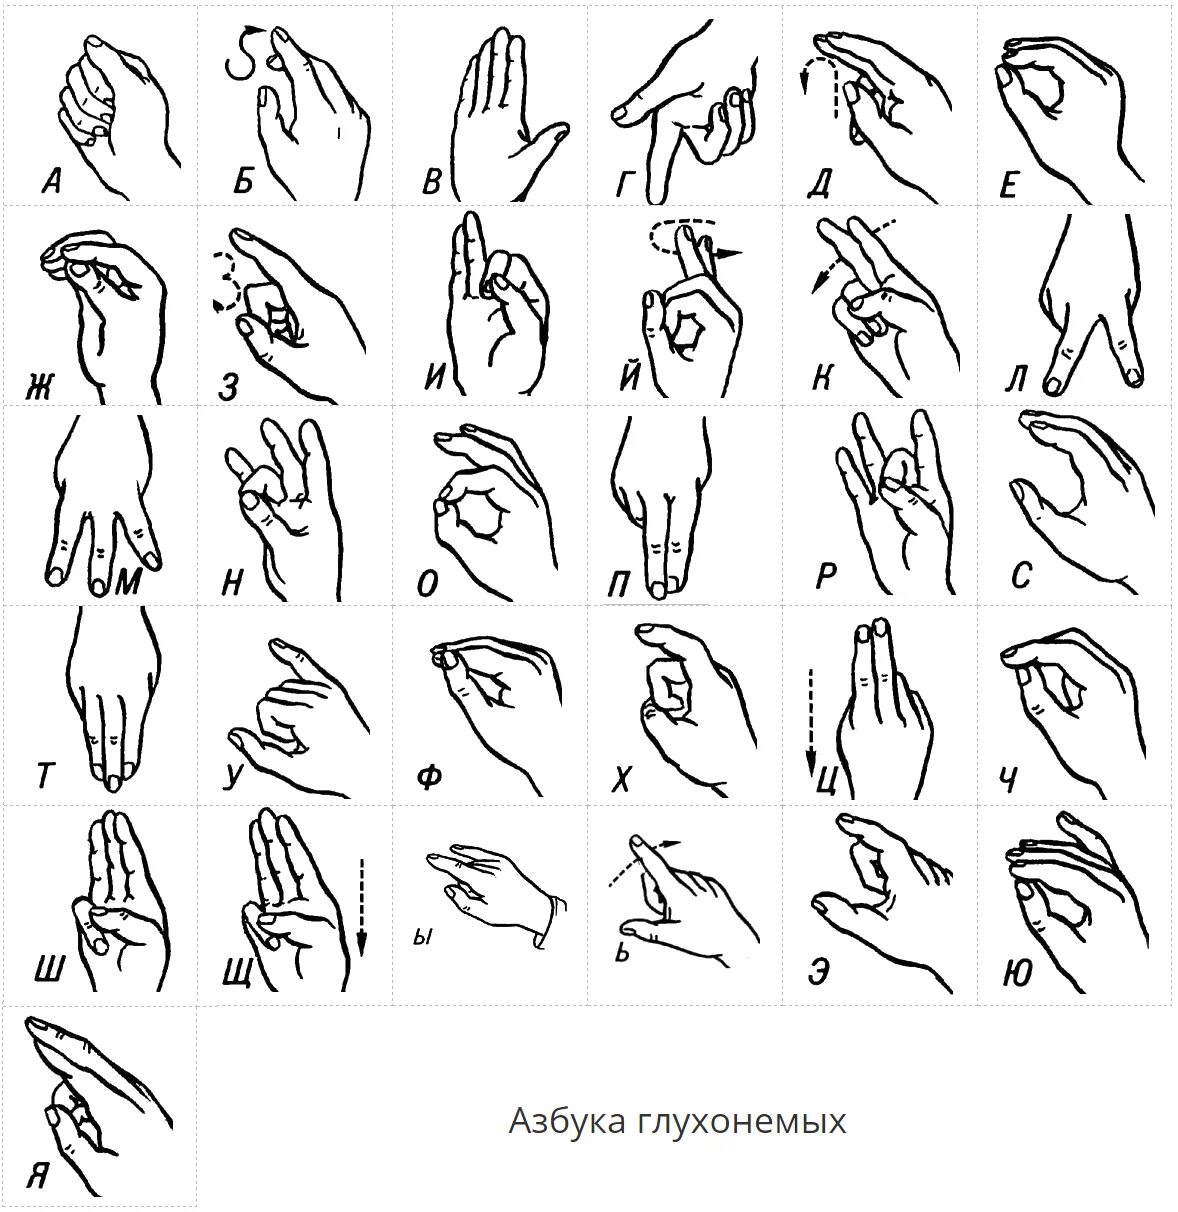 Буквы глухонемых. Язык жестов глухонемых алфавит. Алфавит жестов для глухонемых. Дактиль Азбука жестов. Азбука для глухонемых дактильная.